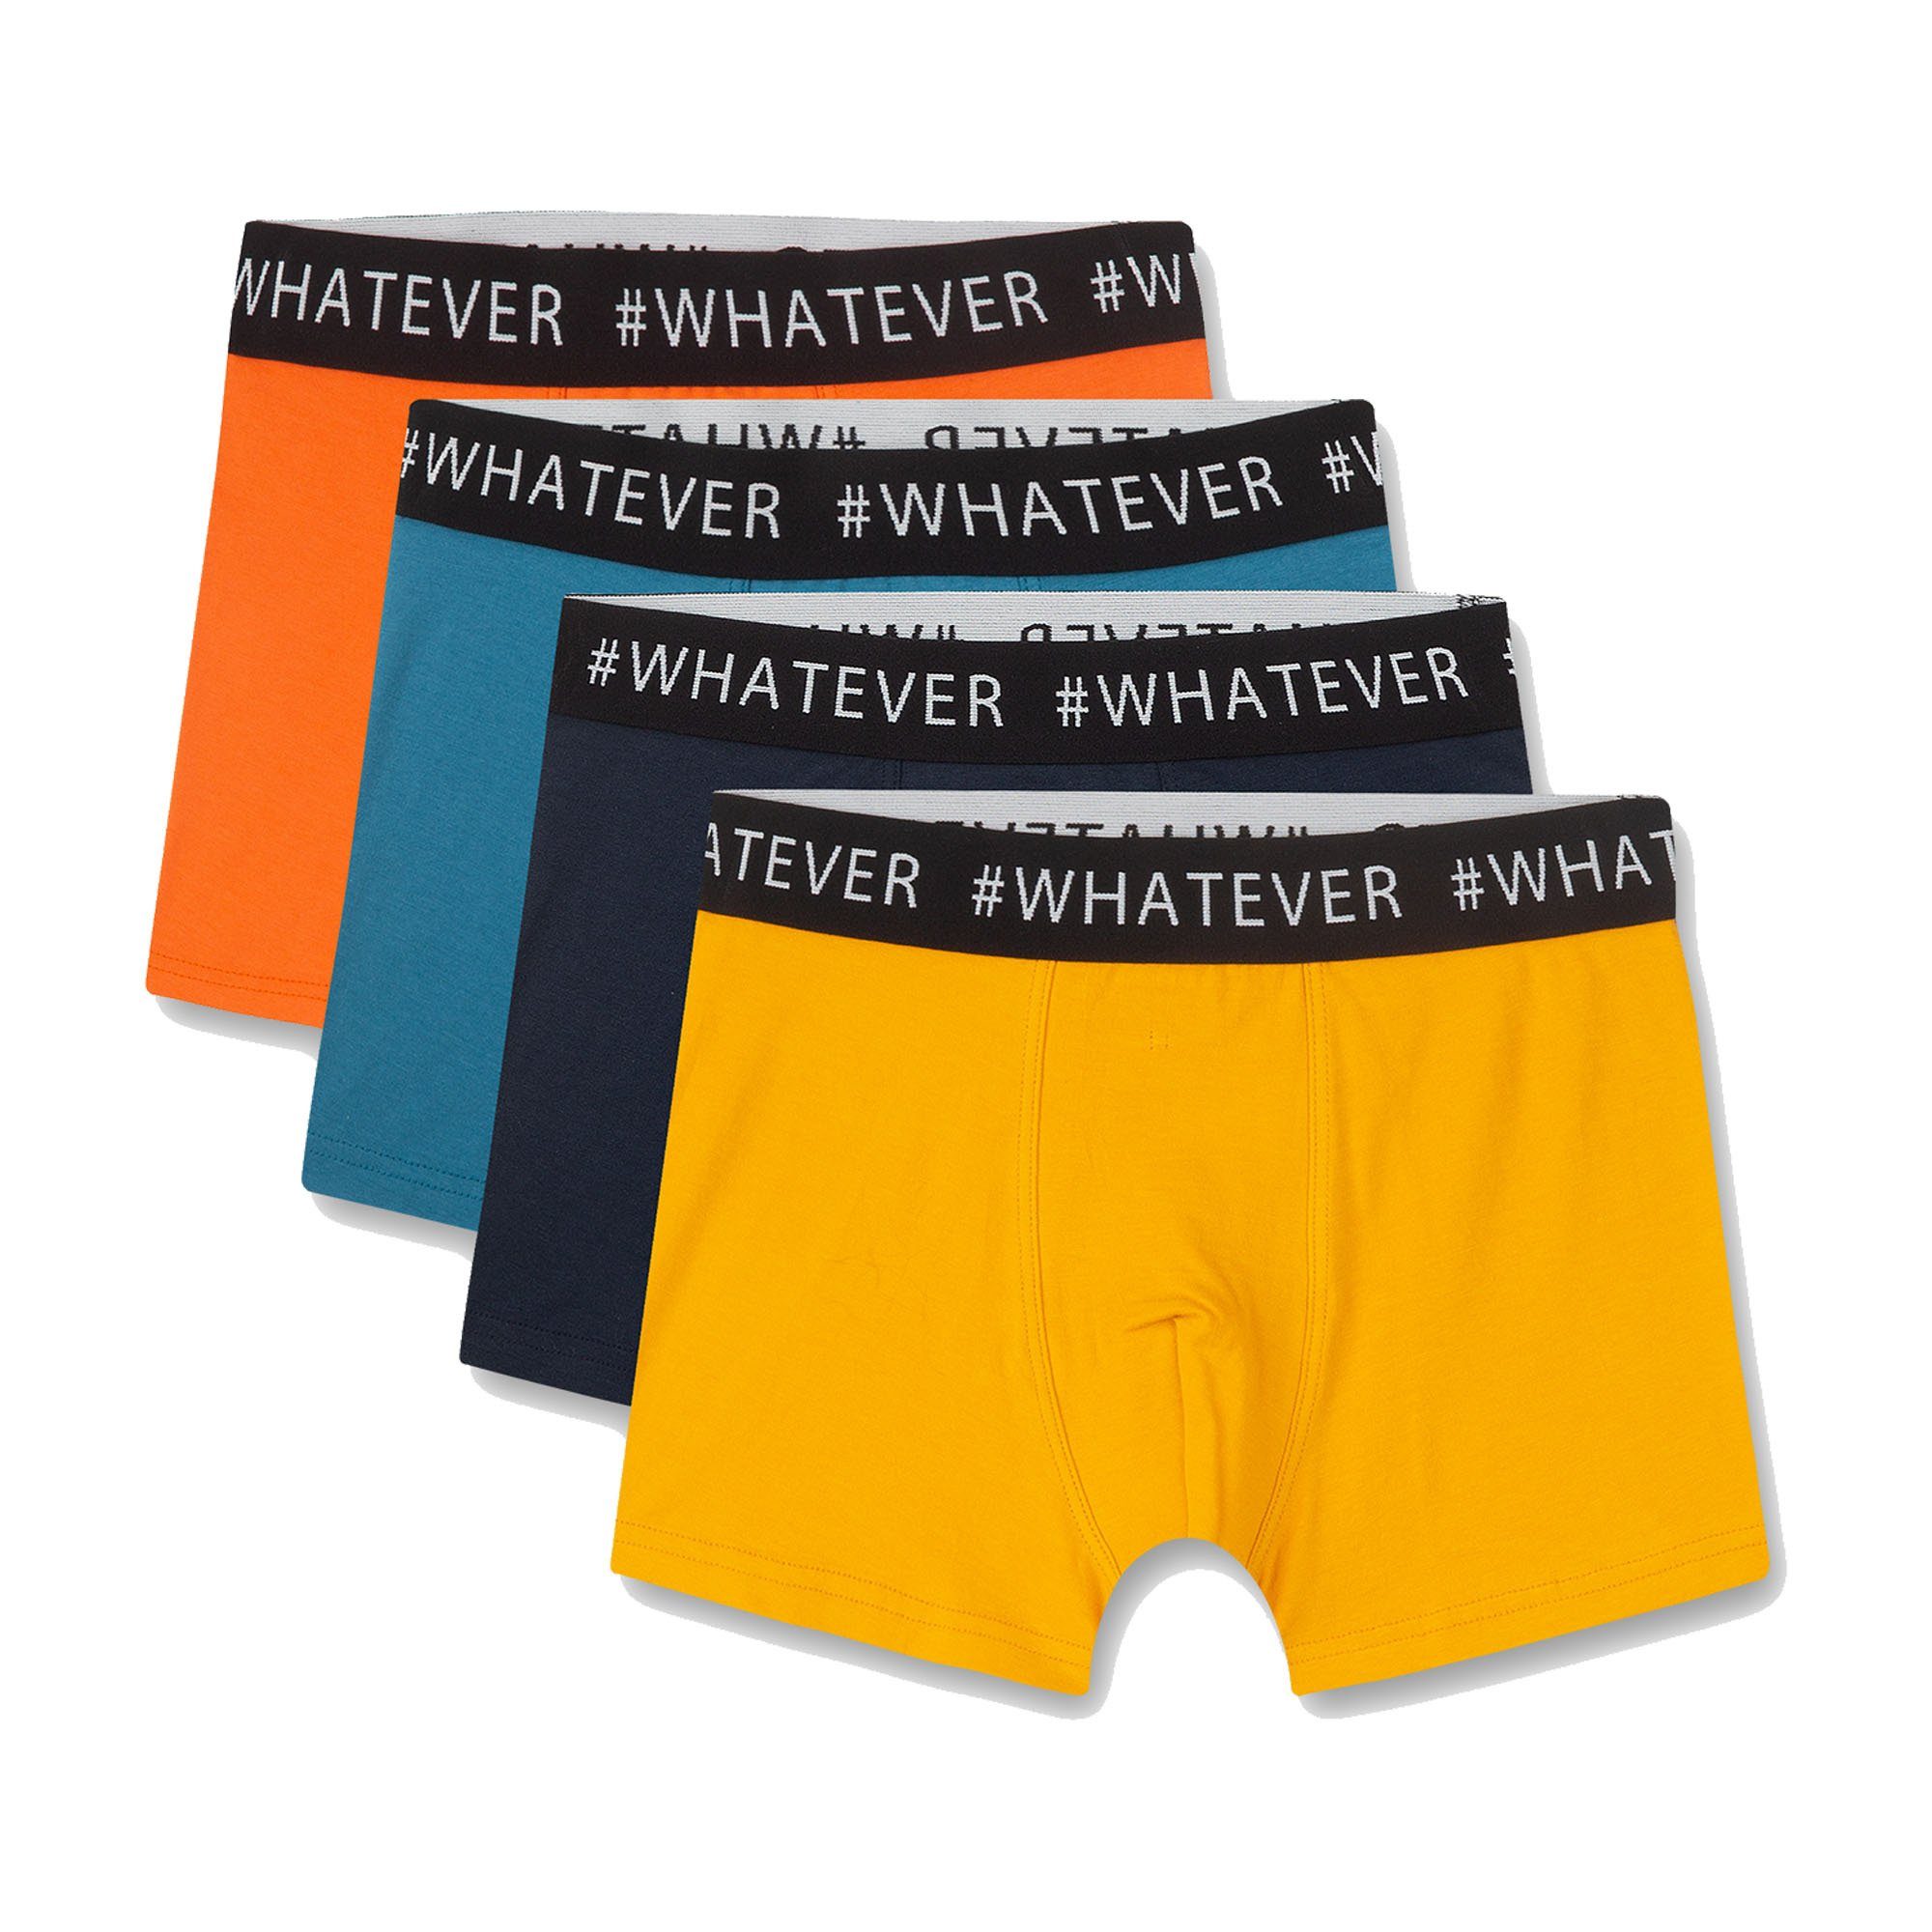 Sanetta Boxer Jungen Shorts - 4er Pack, Pants, Unterhose